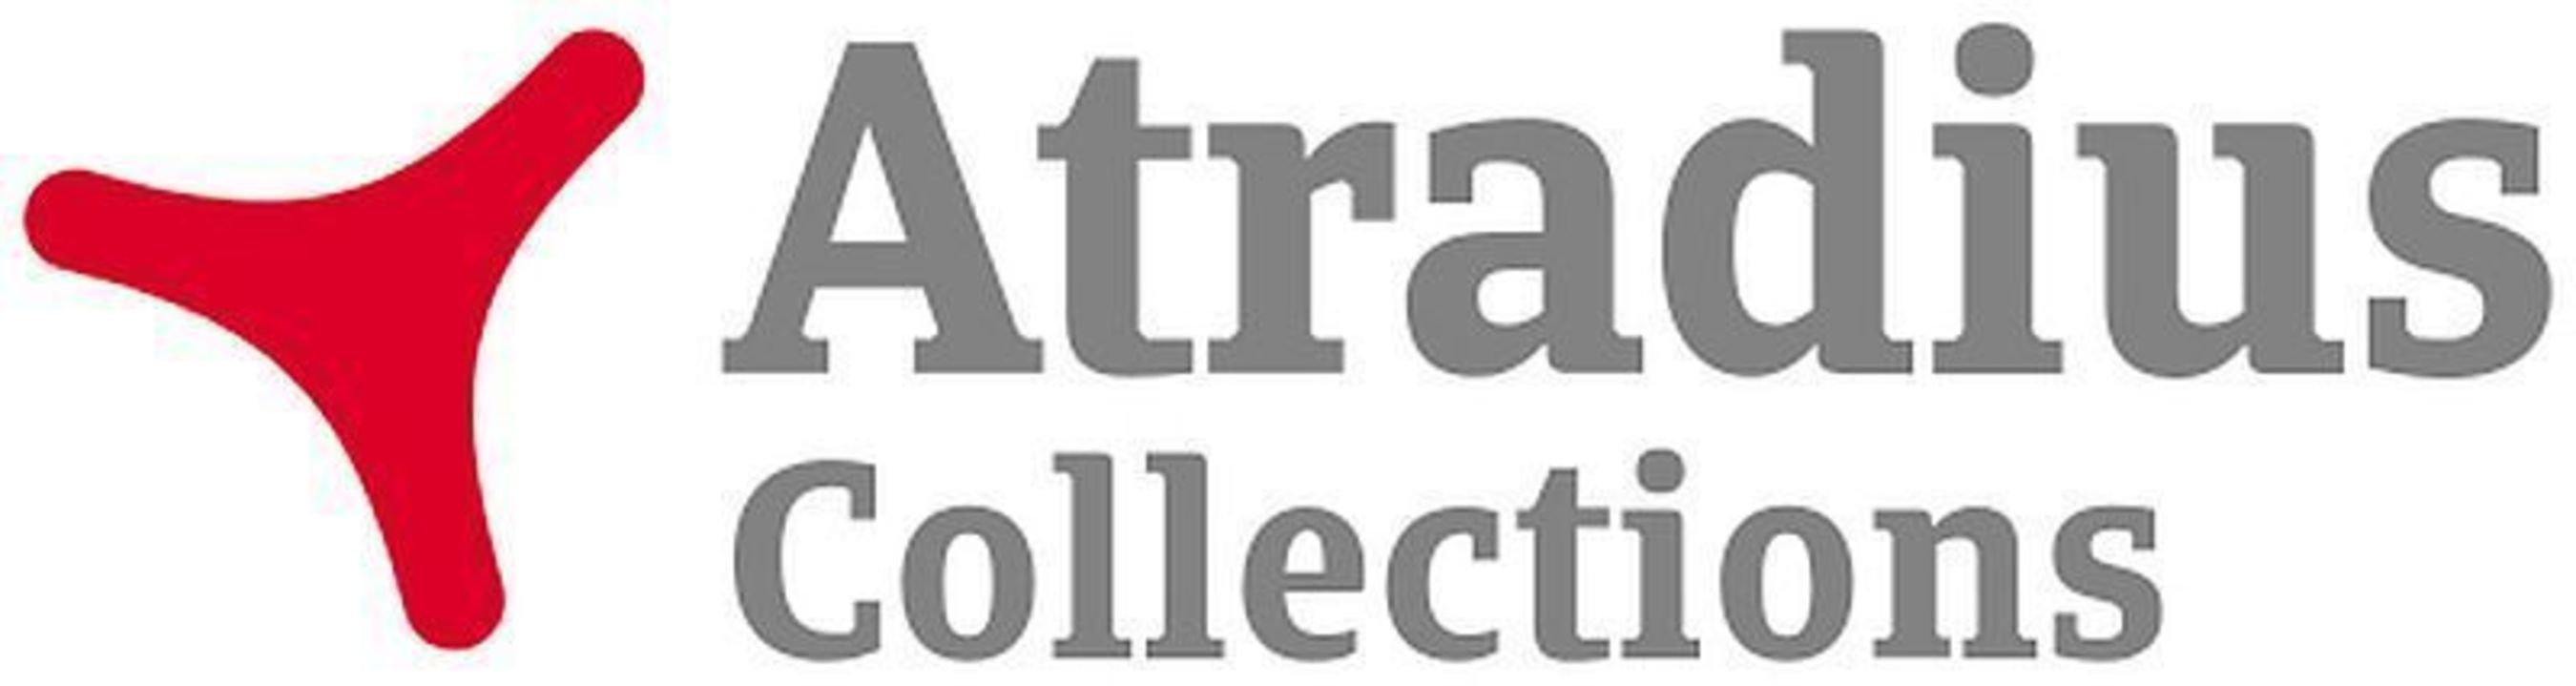 Atradius Collections logo (PRNewsFoto/Atradius)